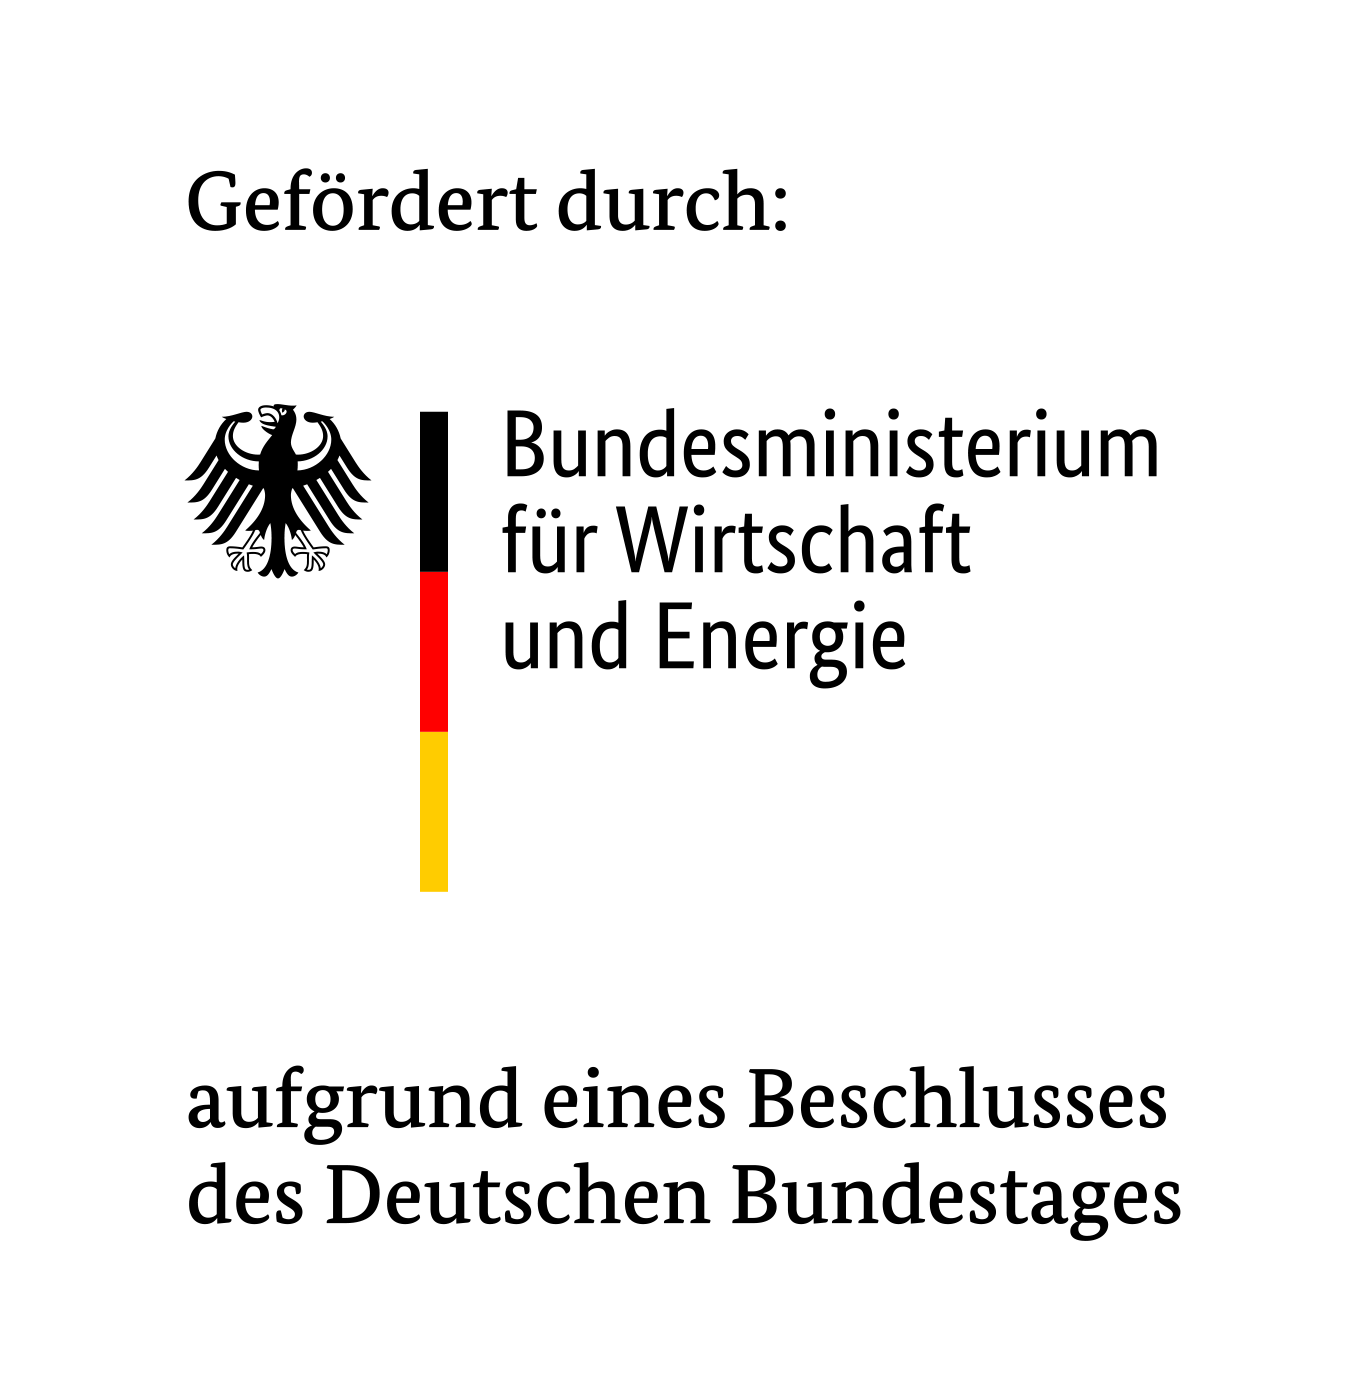 Bundesministerium für Wirtschaft und Energie (BMWi